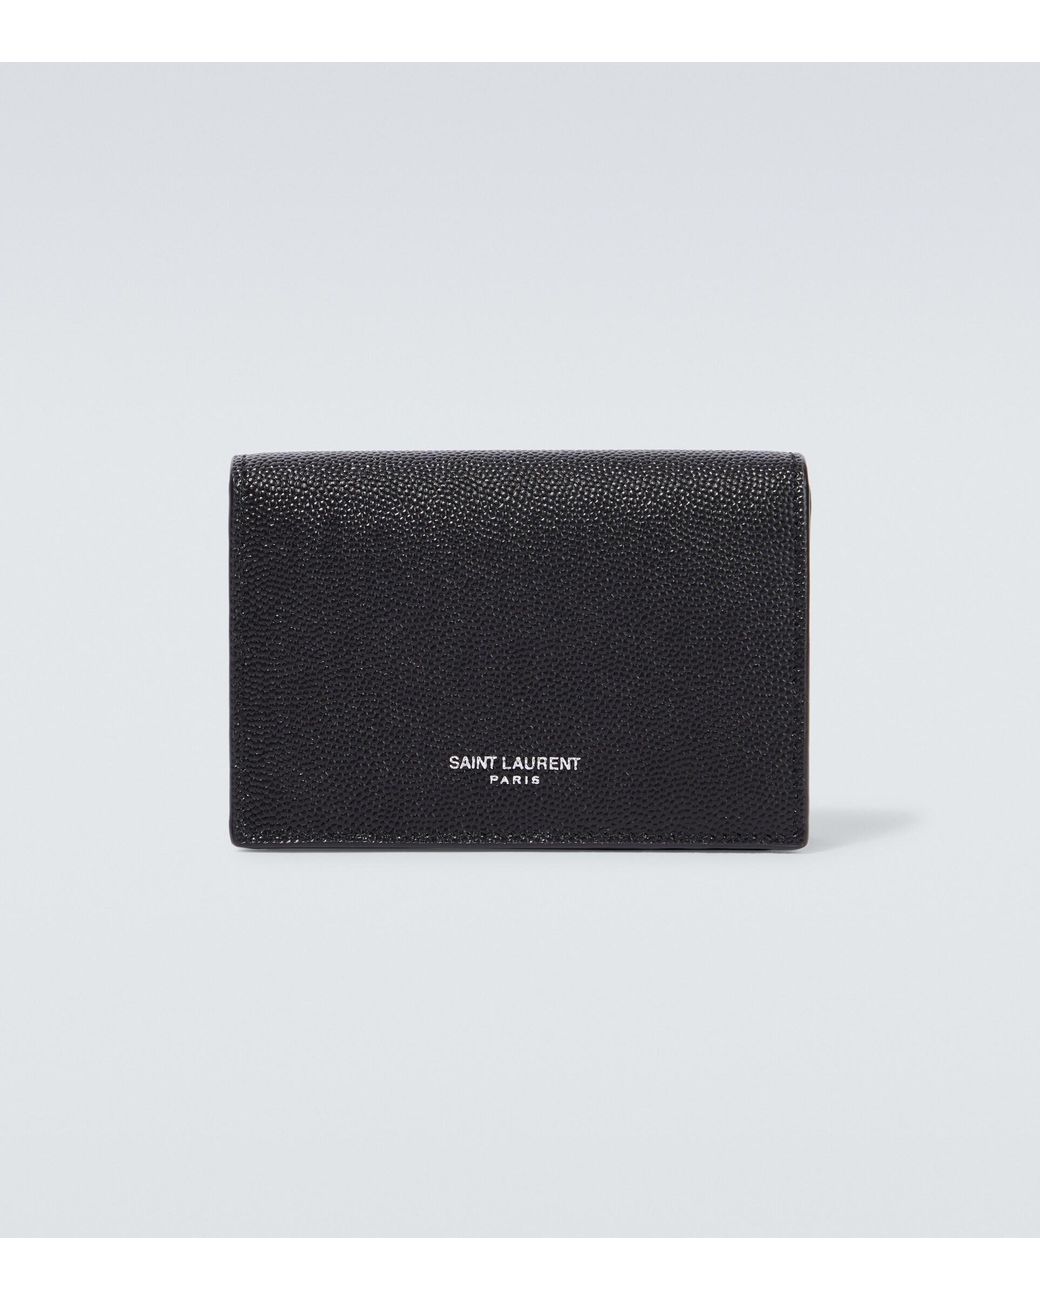 Saint Laurent Paris Leather Card Case in Black for Men | Lyst